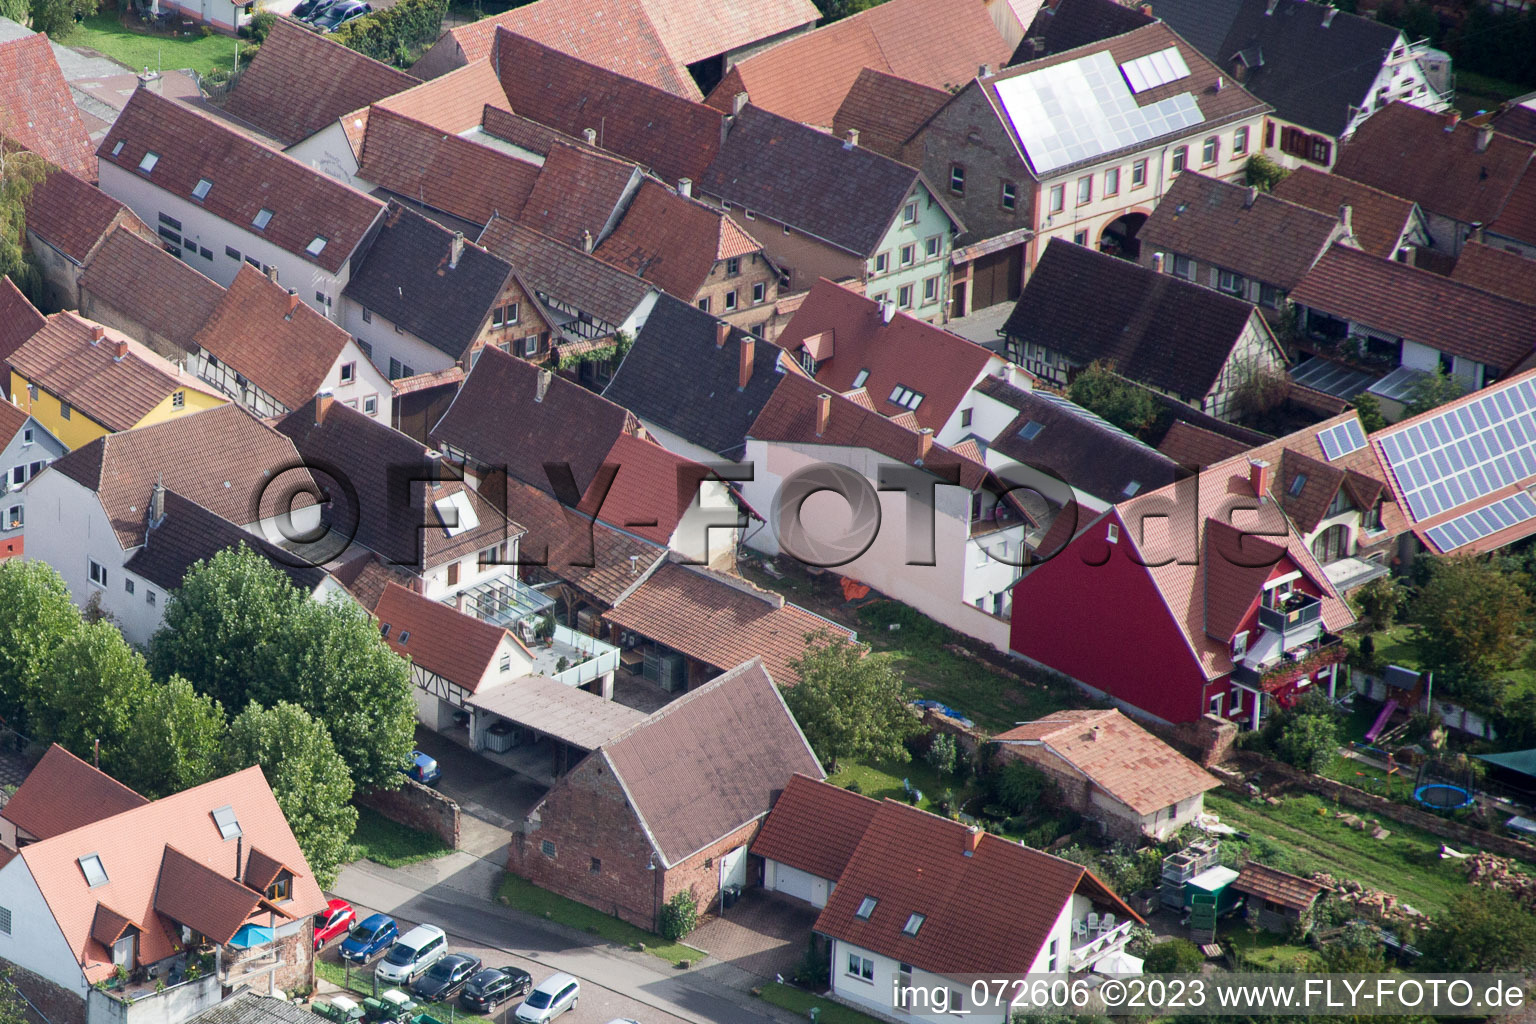 District Heuchelheim in Heuchelheim-Klingen in the state Rhineland-Palatinate, Germany from the plane